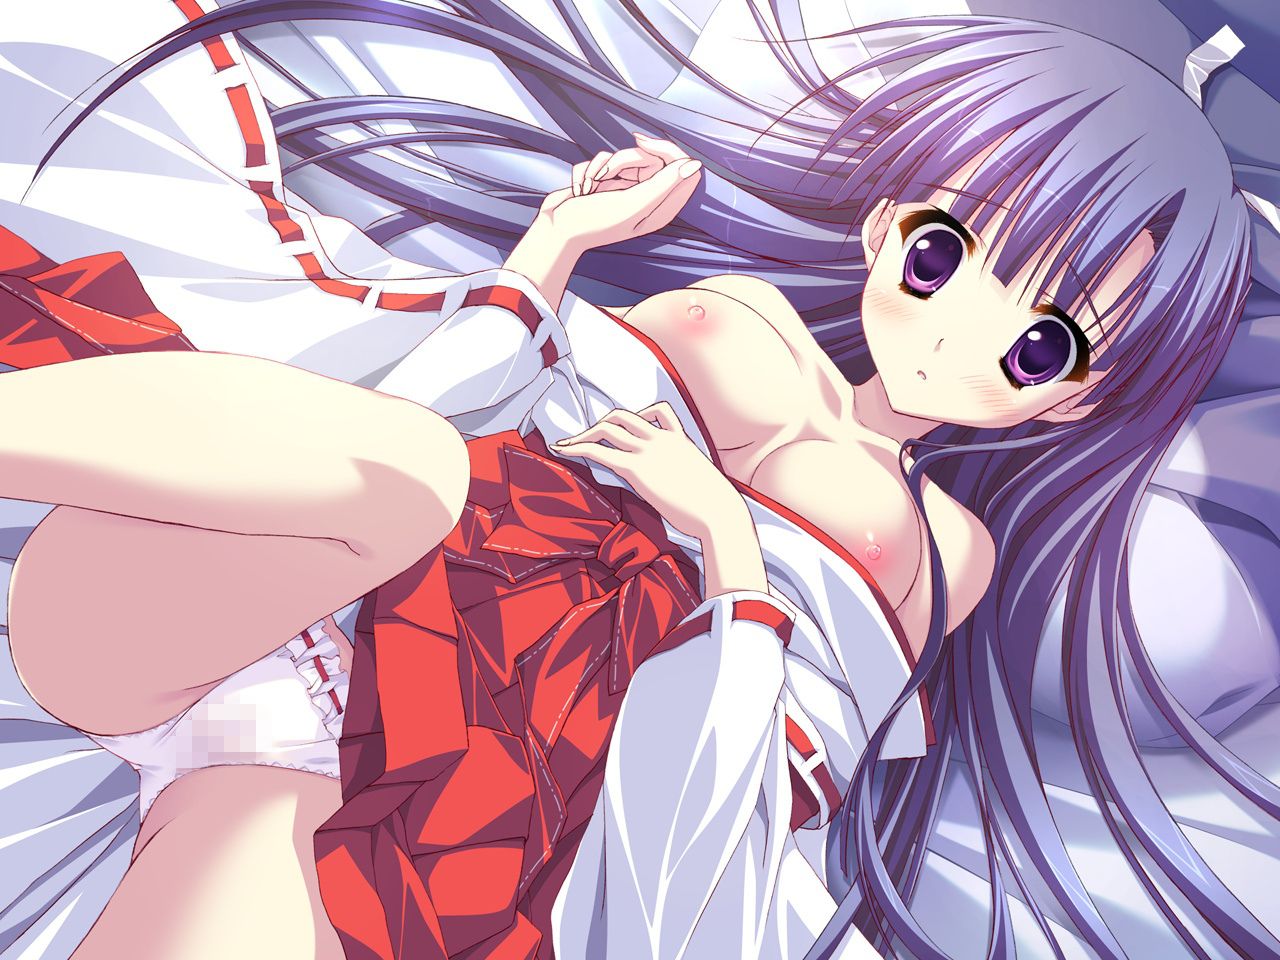 Hoshizora e kakaru Hashi [18 PC Bishoujo game CG] erotic wallpapers and image part 4 2